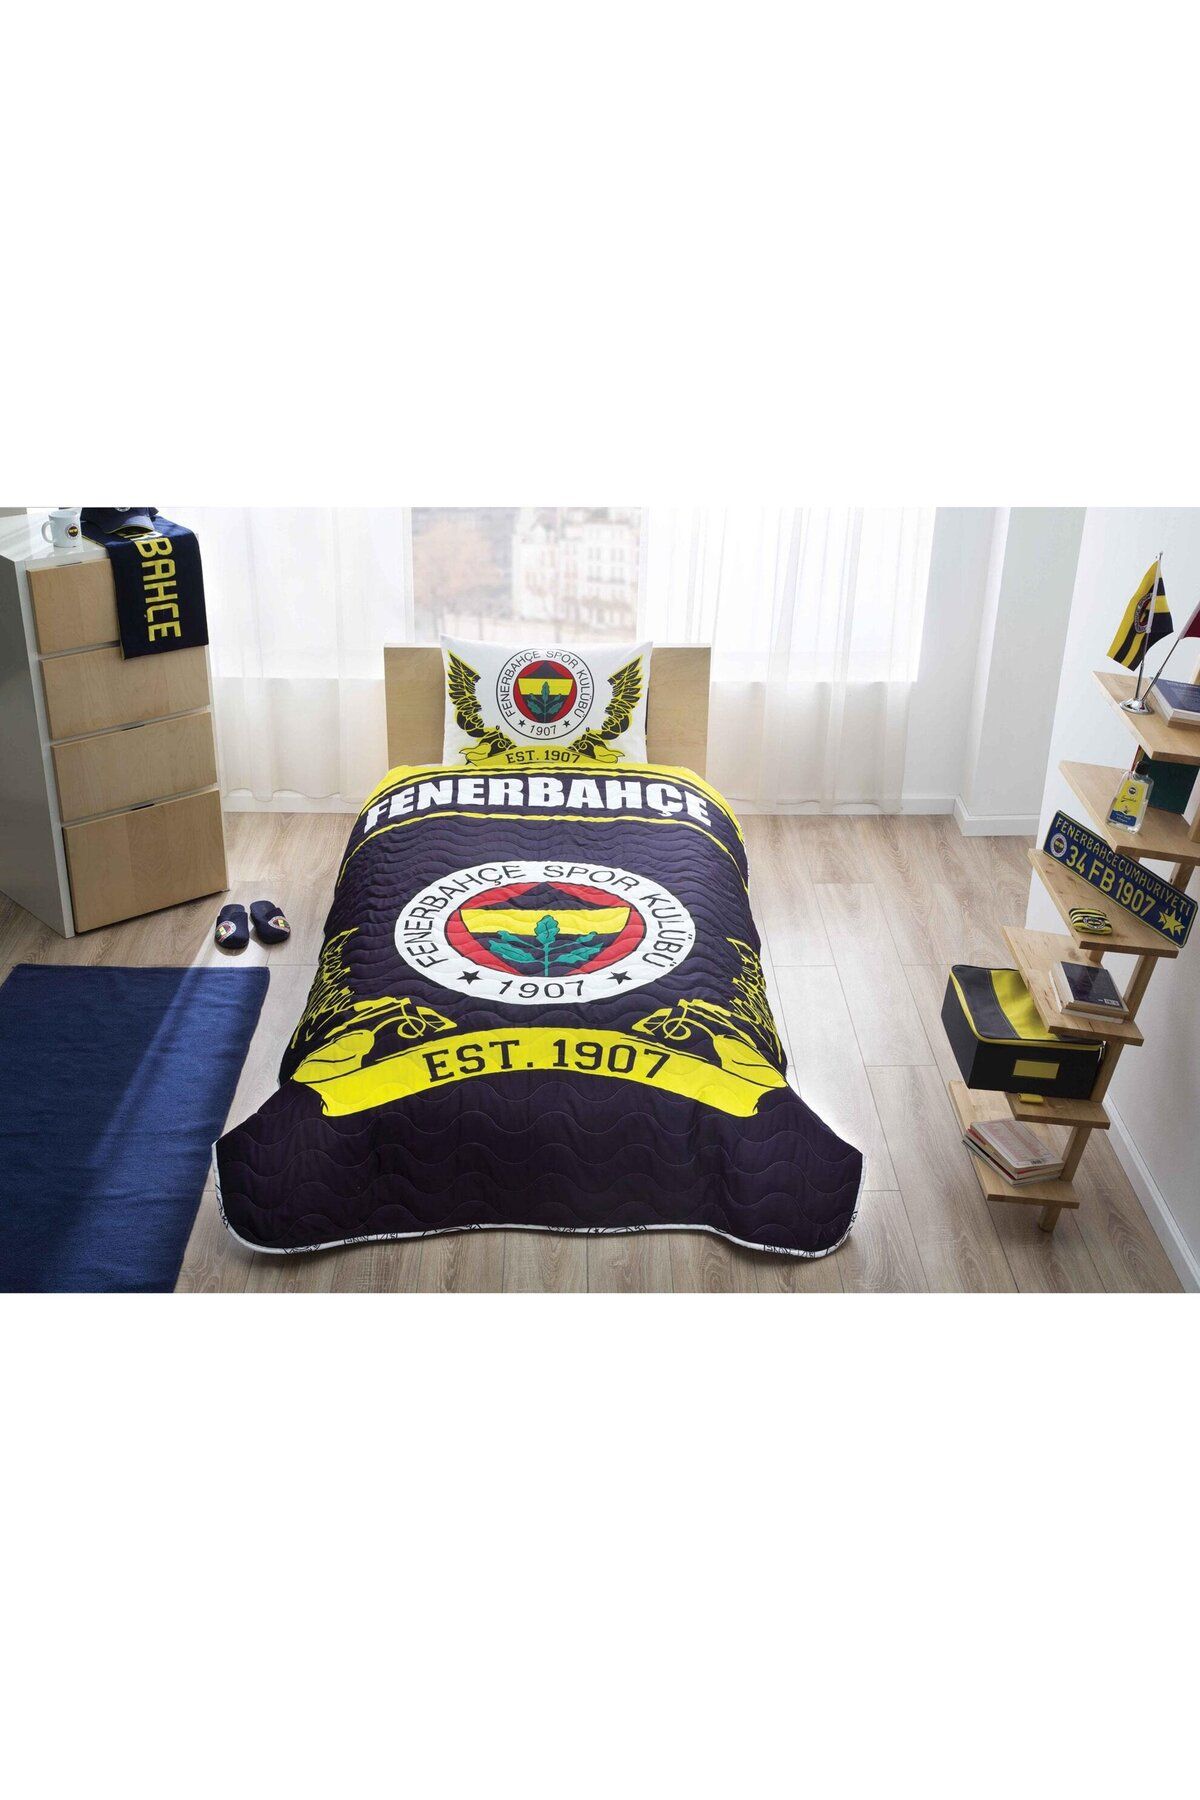 Taç Fenerbahçe Logo Lisanslı Yatak Örtüsü Yastık Kılıfı